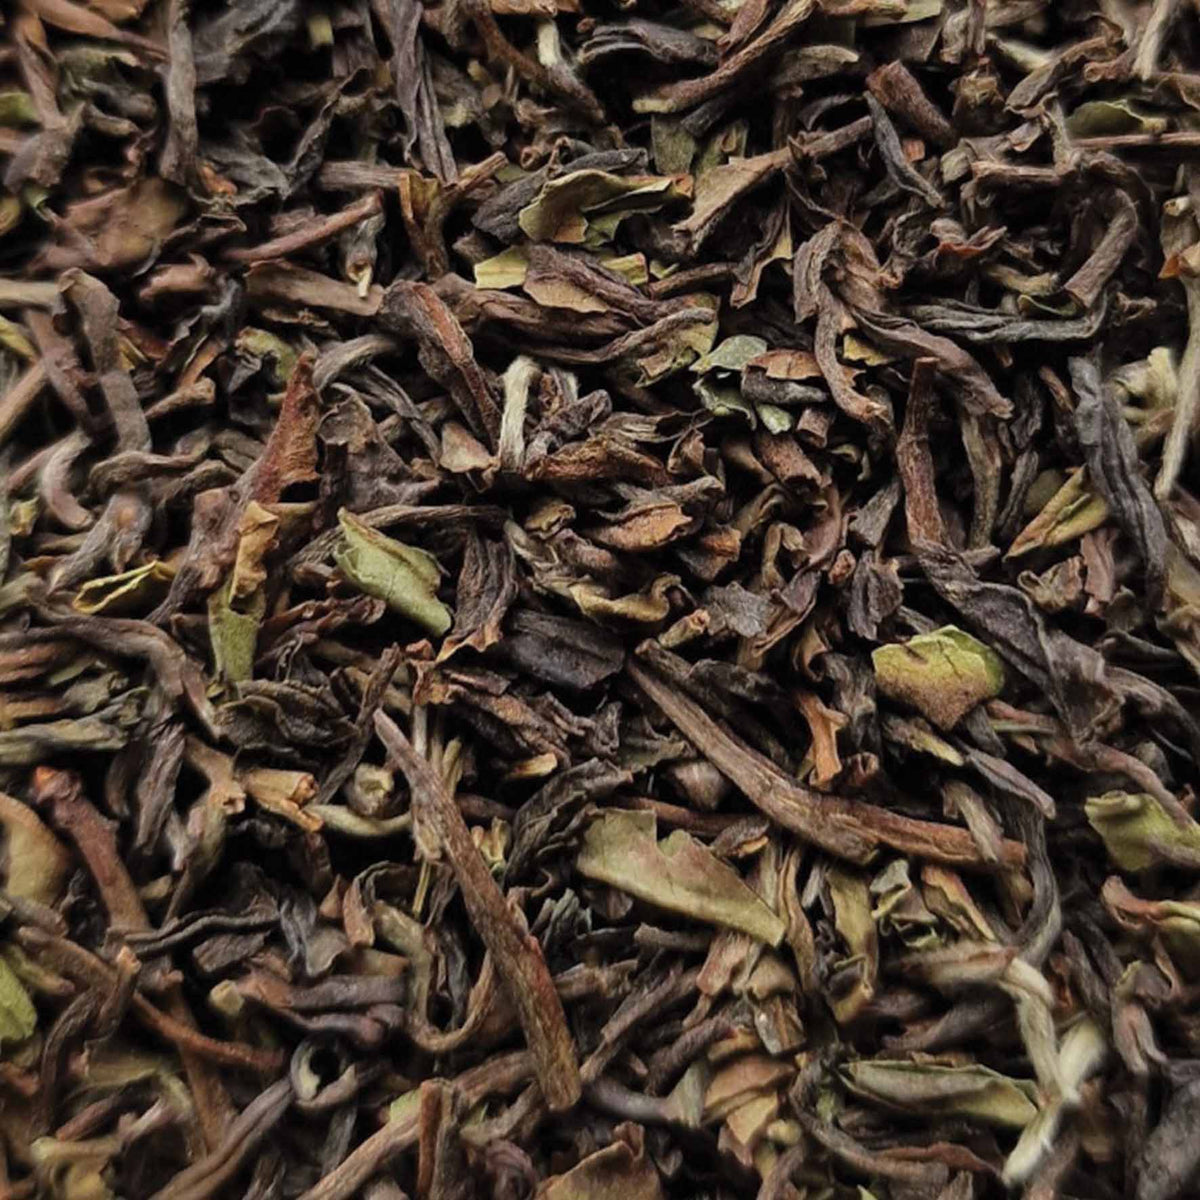 Premium Nepal Black Estate Loose Leaf Tea - tea leaves